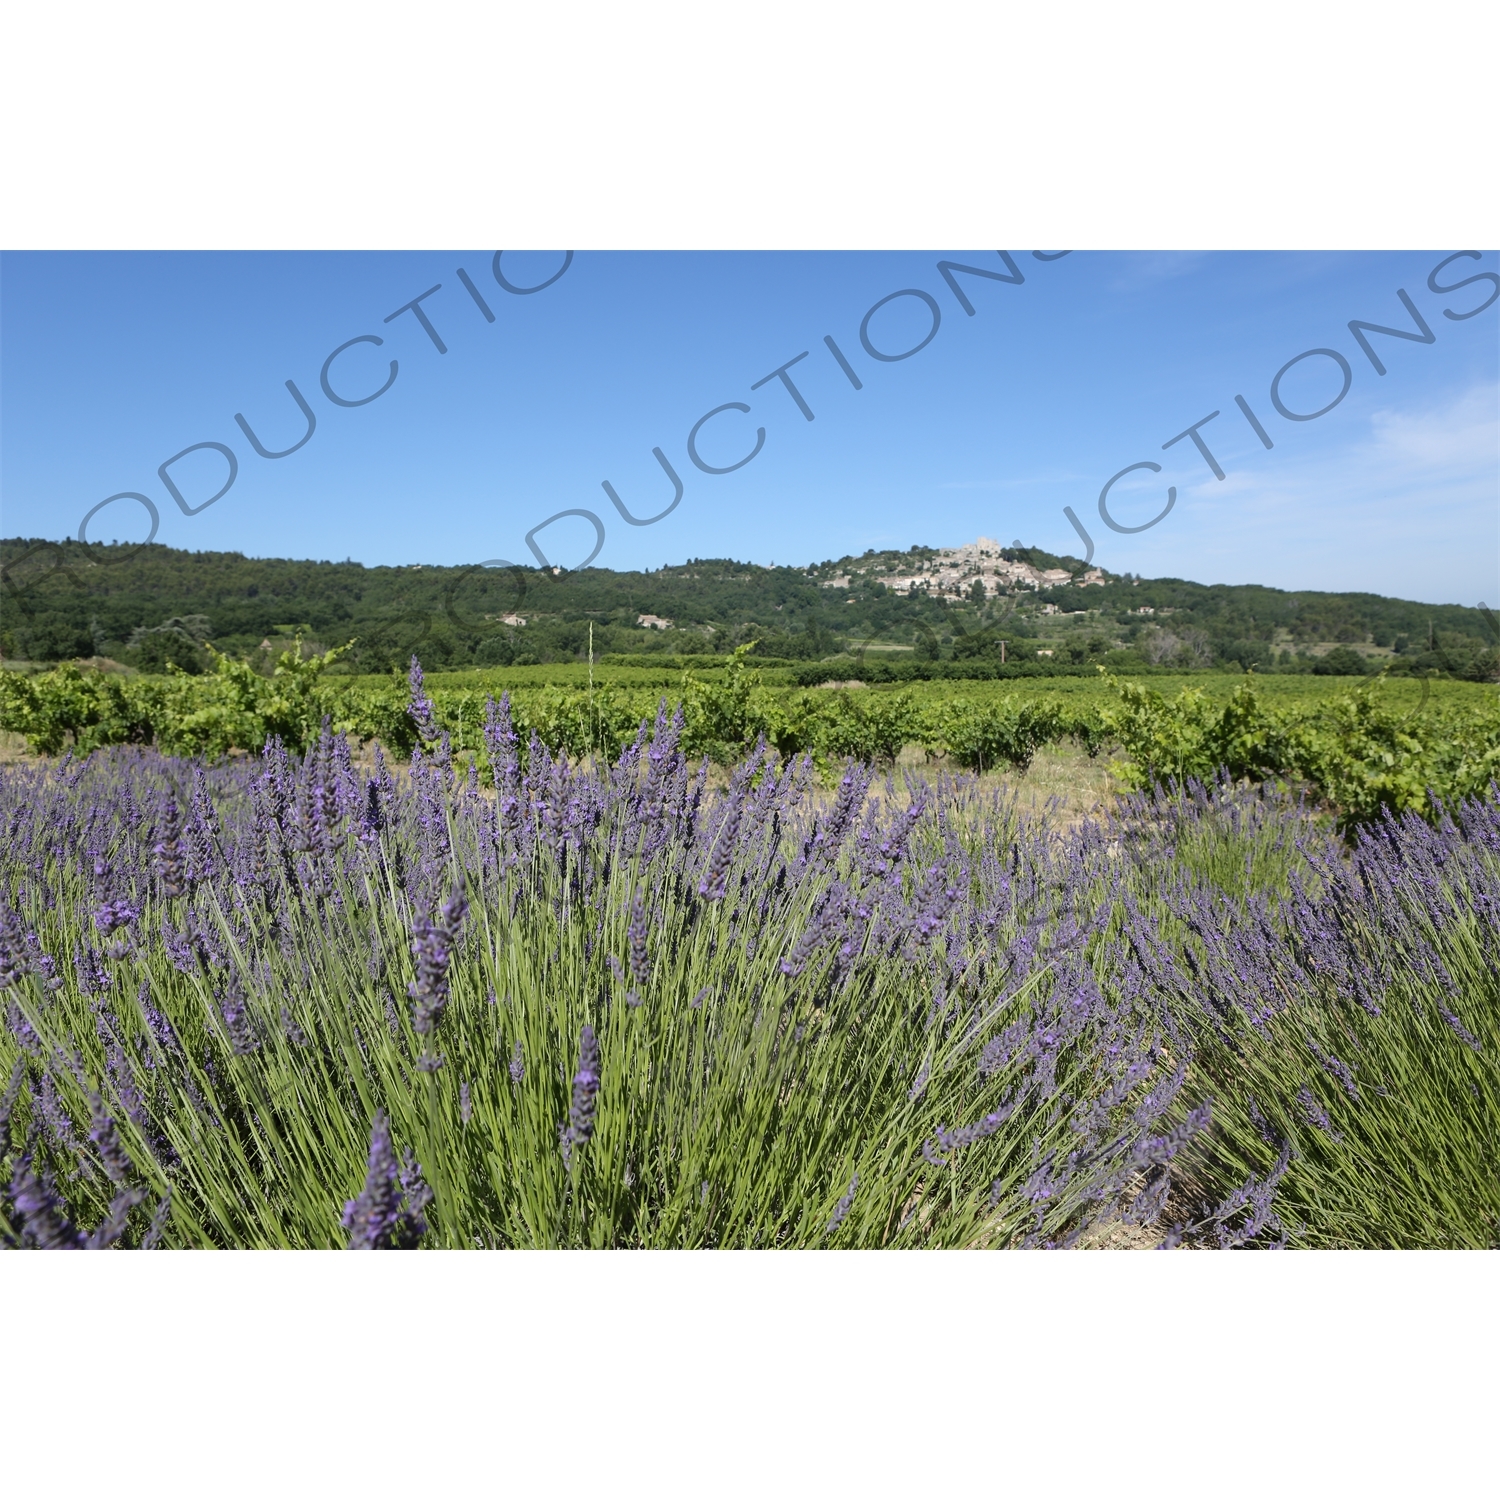 Lavender near Château de Lacoste